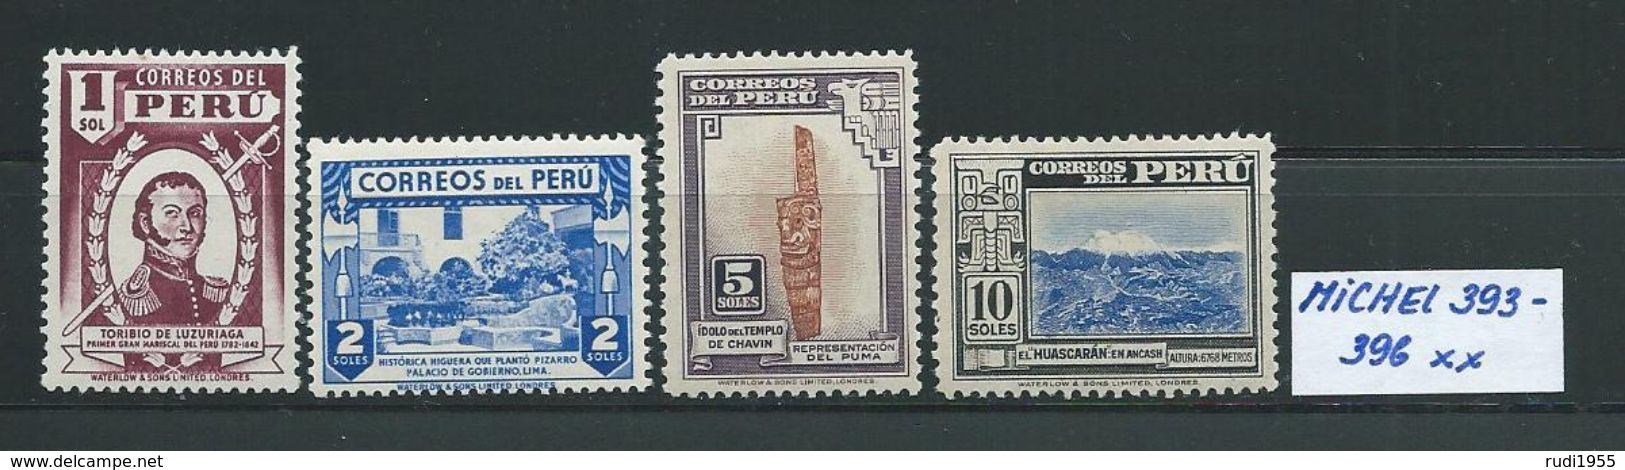 PERU MICHEL 393 - 396 Postfrisch Siehe Scan - Peru